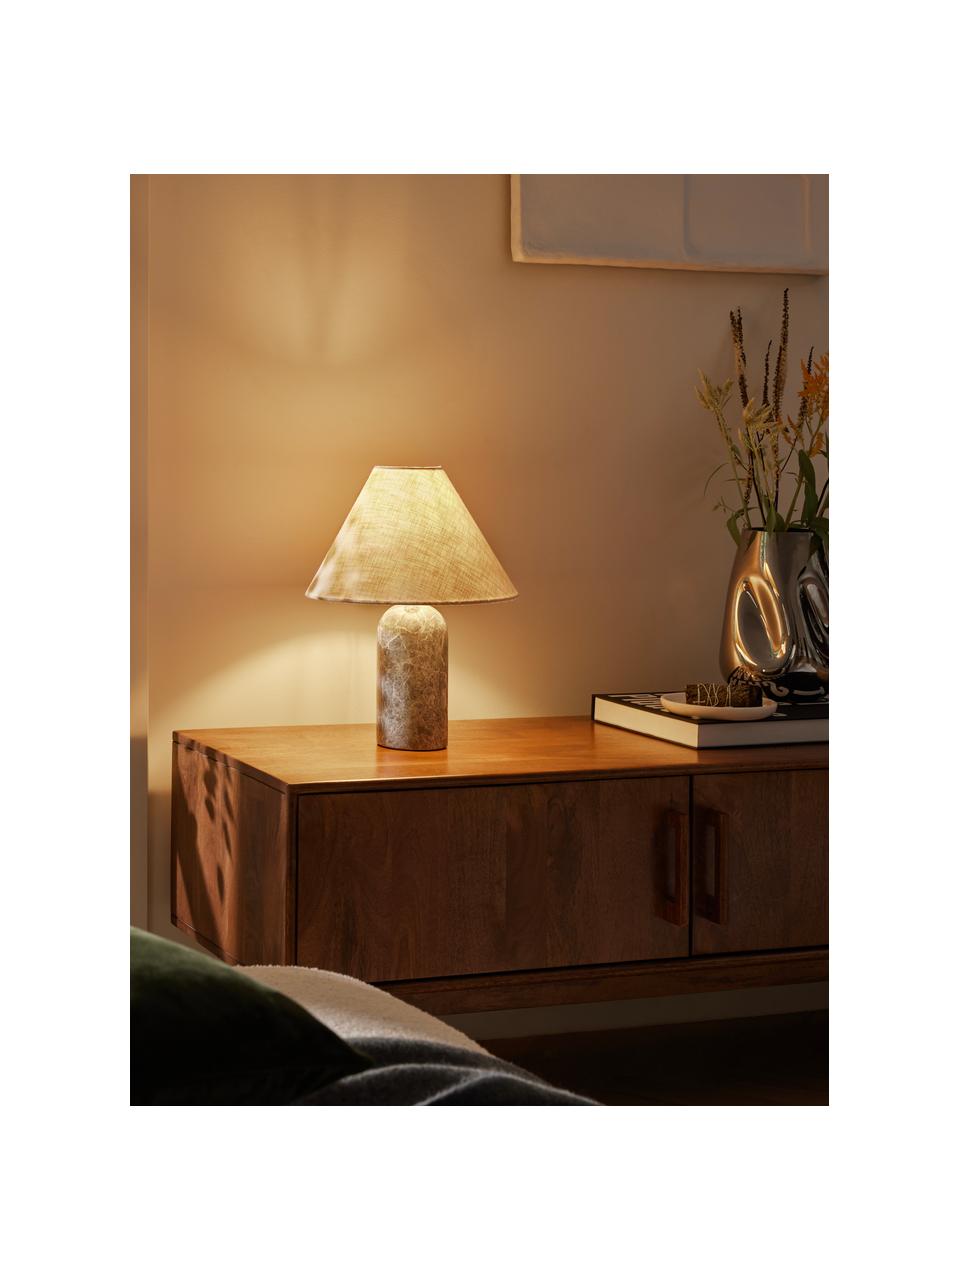 Tischlampe Gia mit Marmorfuss, Lampenschirm: 50 % Leinen, 50 % Polyest, Beige, Grau, marmoriert, Ø 30 x H 39 cm